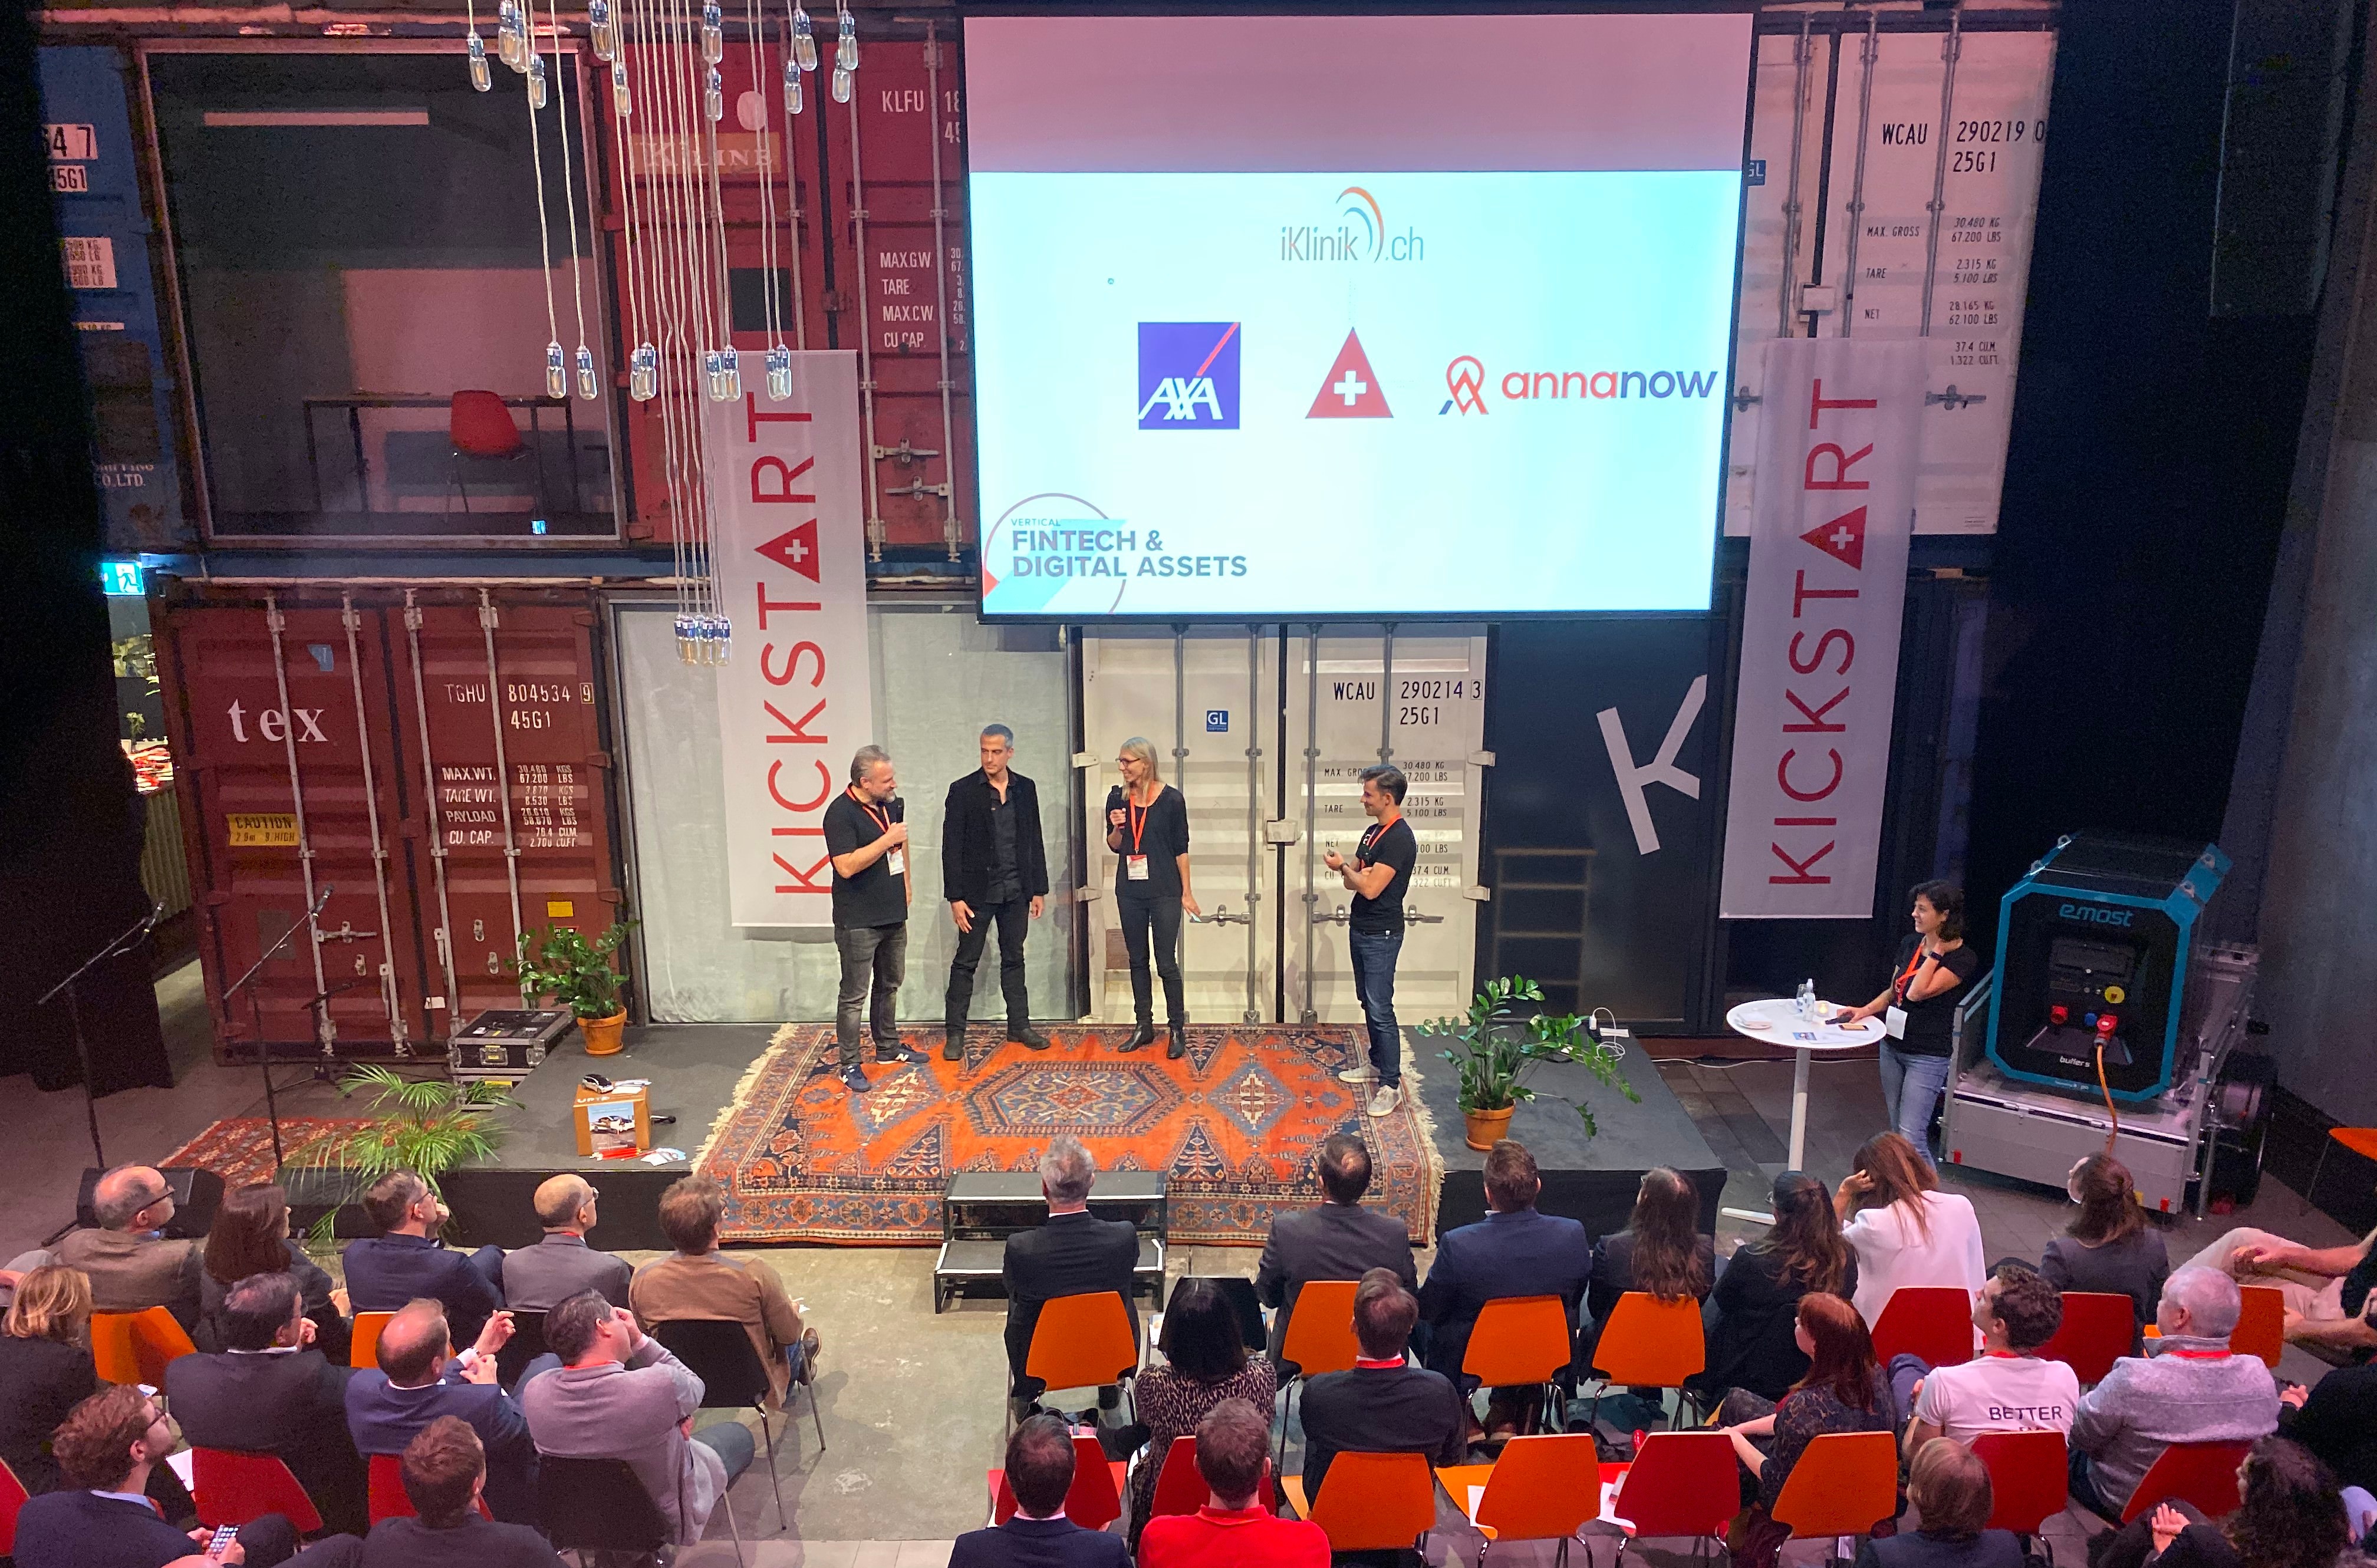 Schweizer Fintech-Startup Annanow ist grosser Gewinner bei internationalem Startup-Pitch: Annanow räumt ab